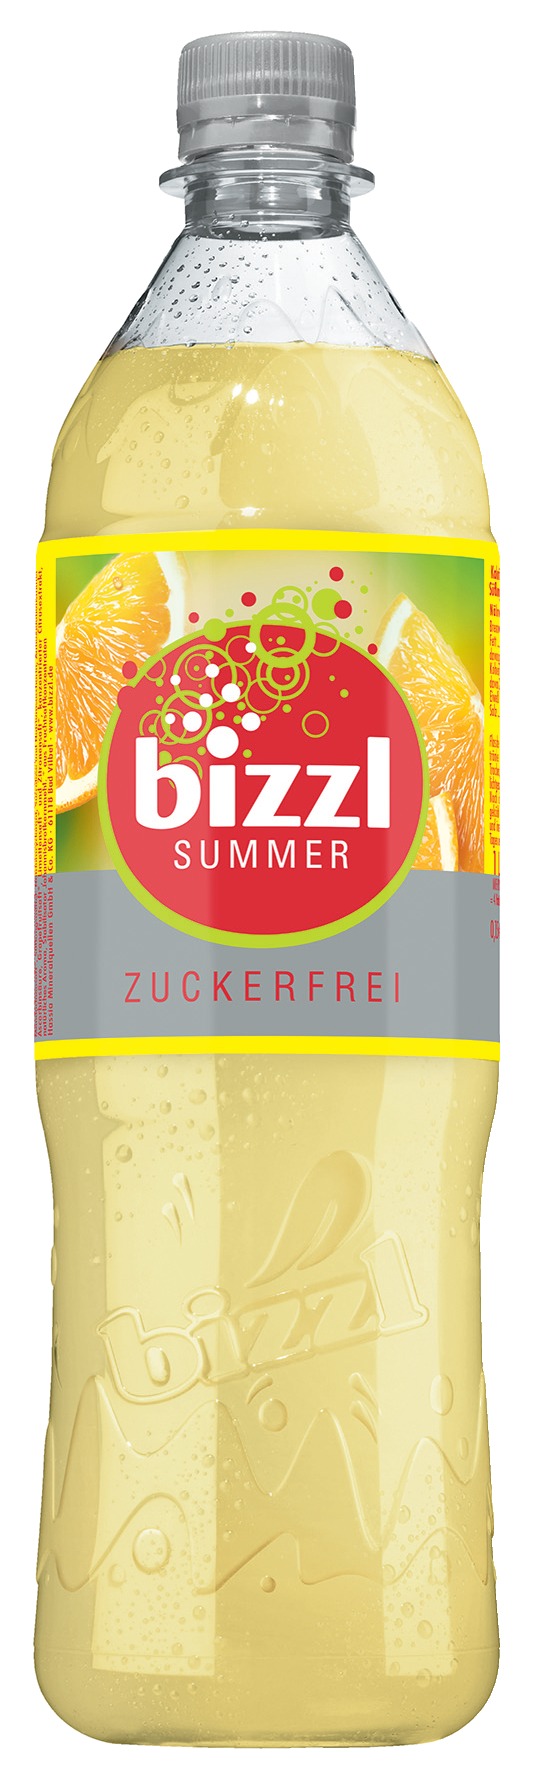 Bizzl Summer Zuckerfrei